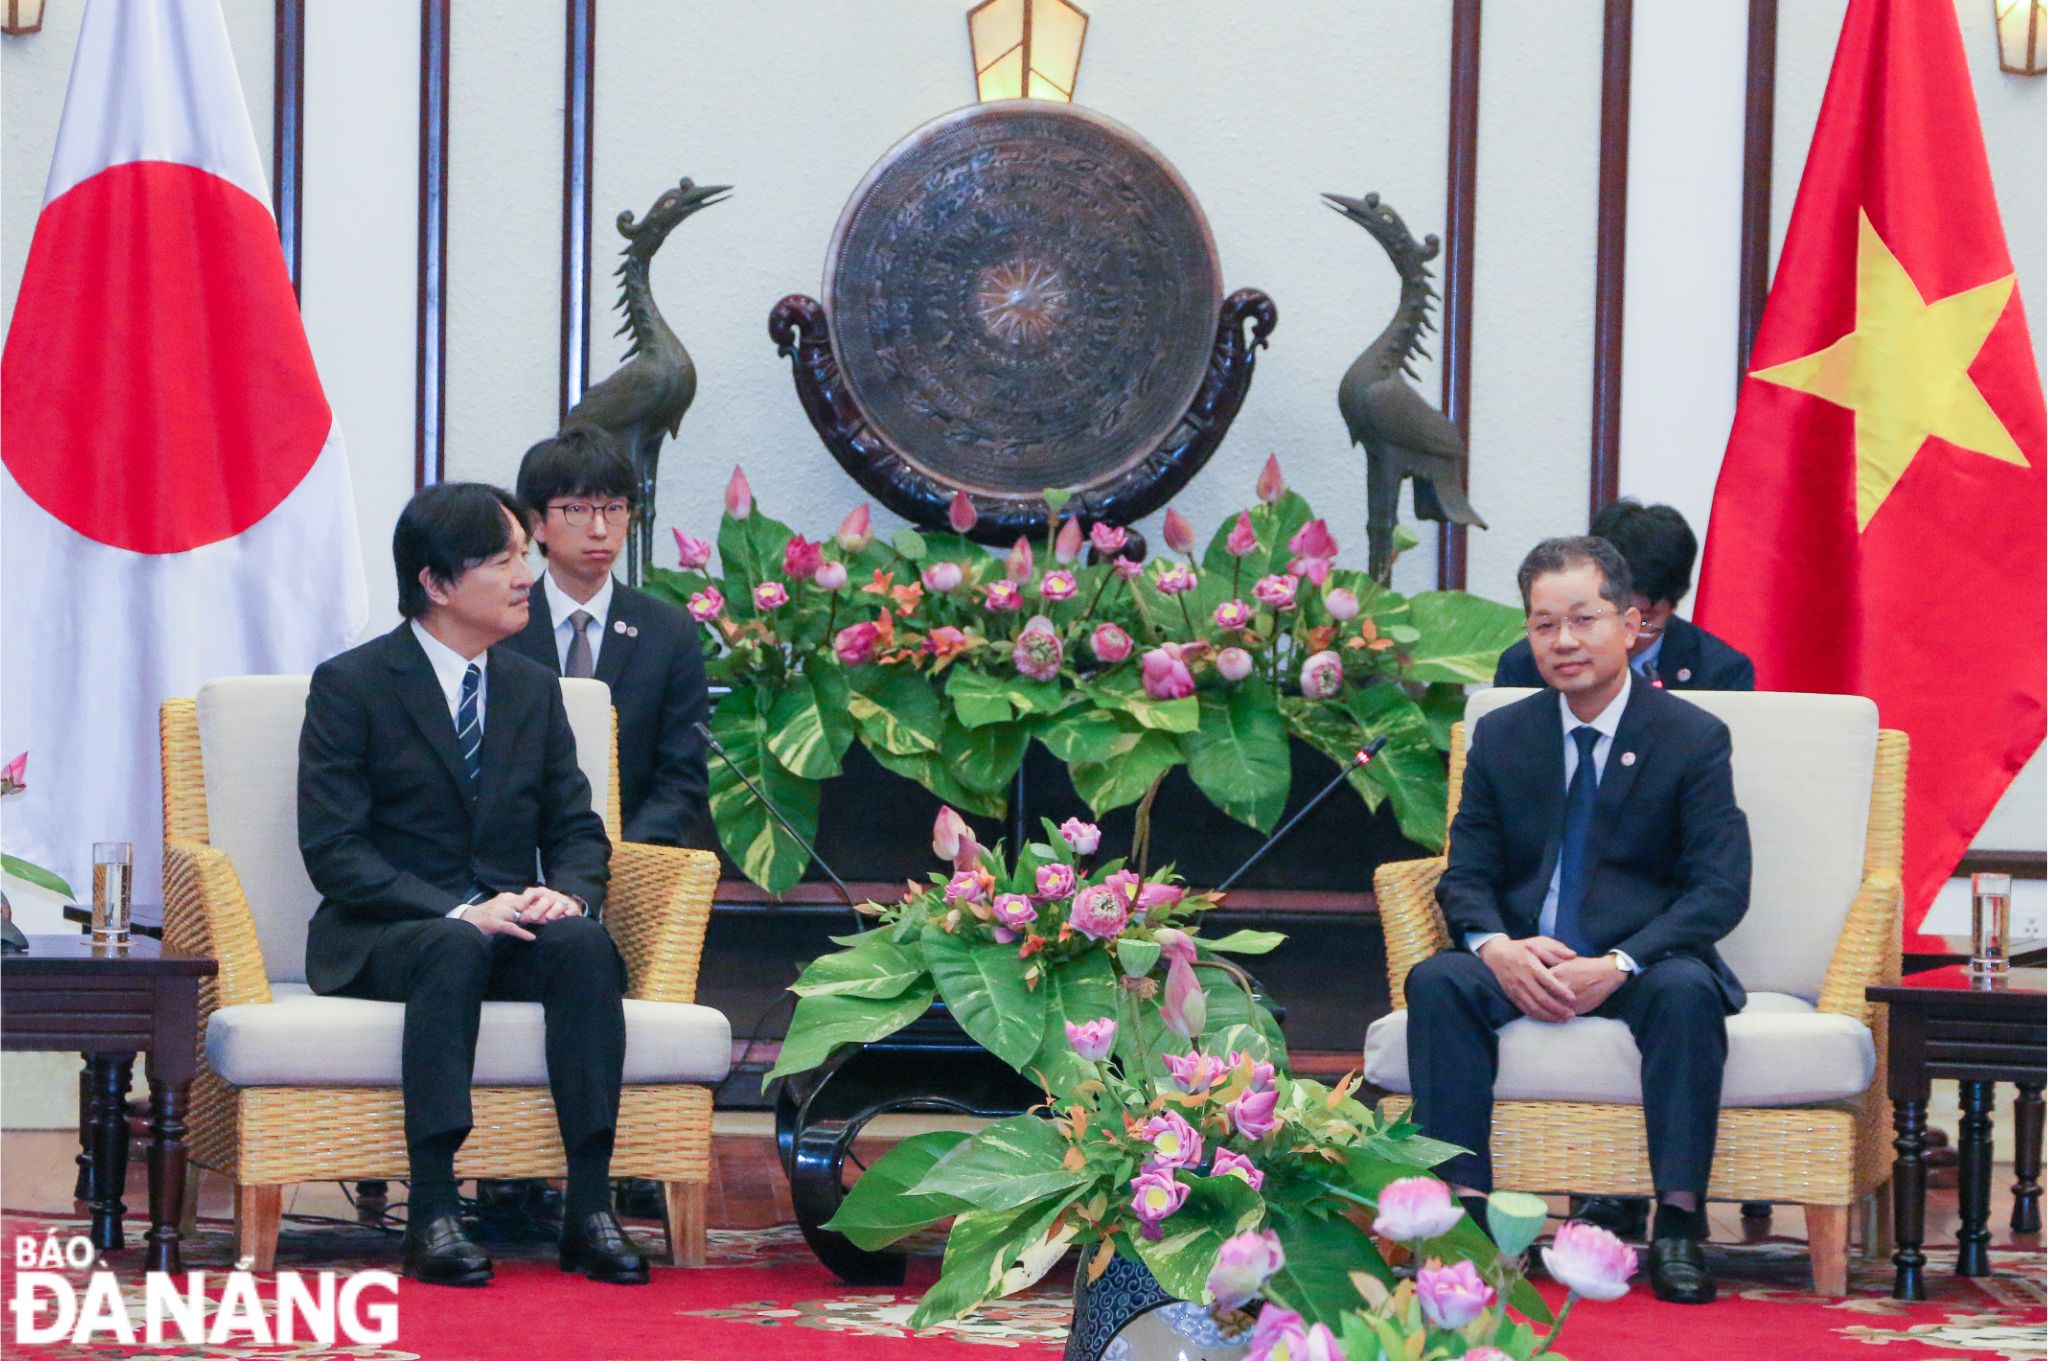 Bí thư Thành ủy Nguyễn Văn Quảng chủ trì tiếp Hoàng Thái tử Nhật Bản